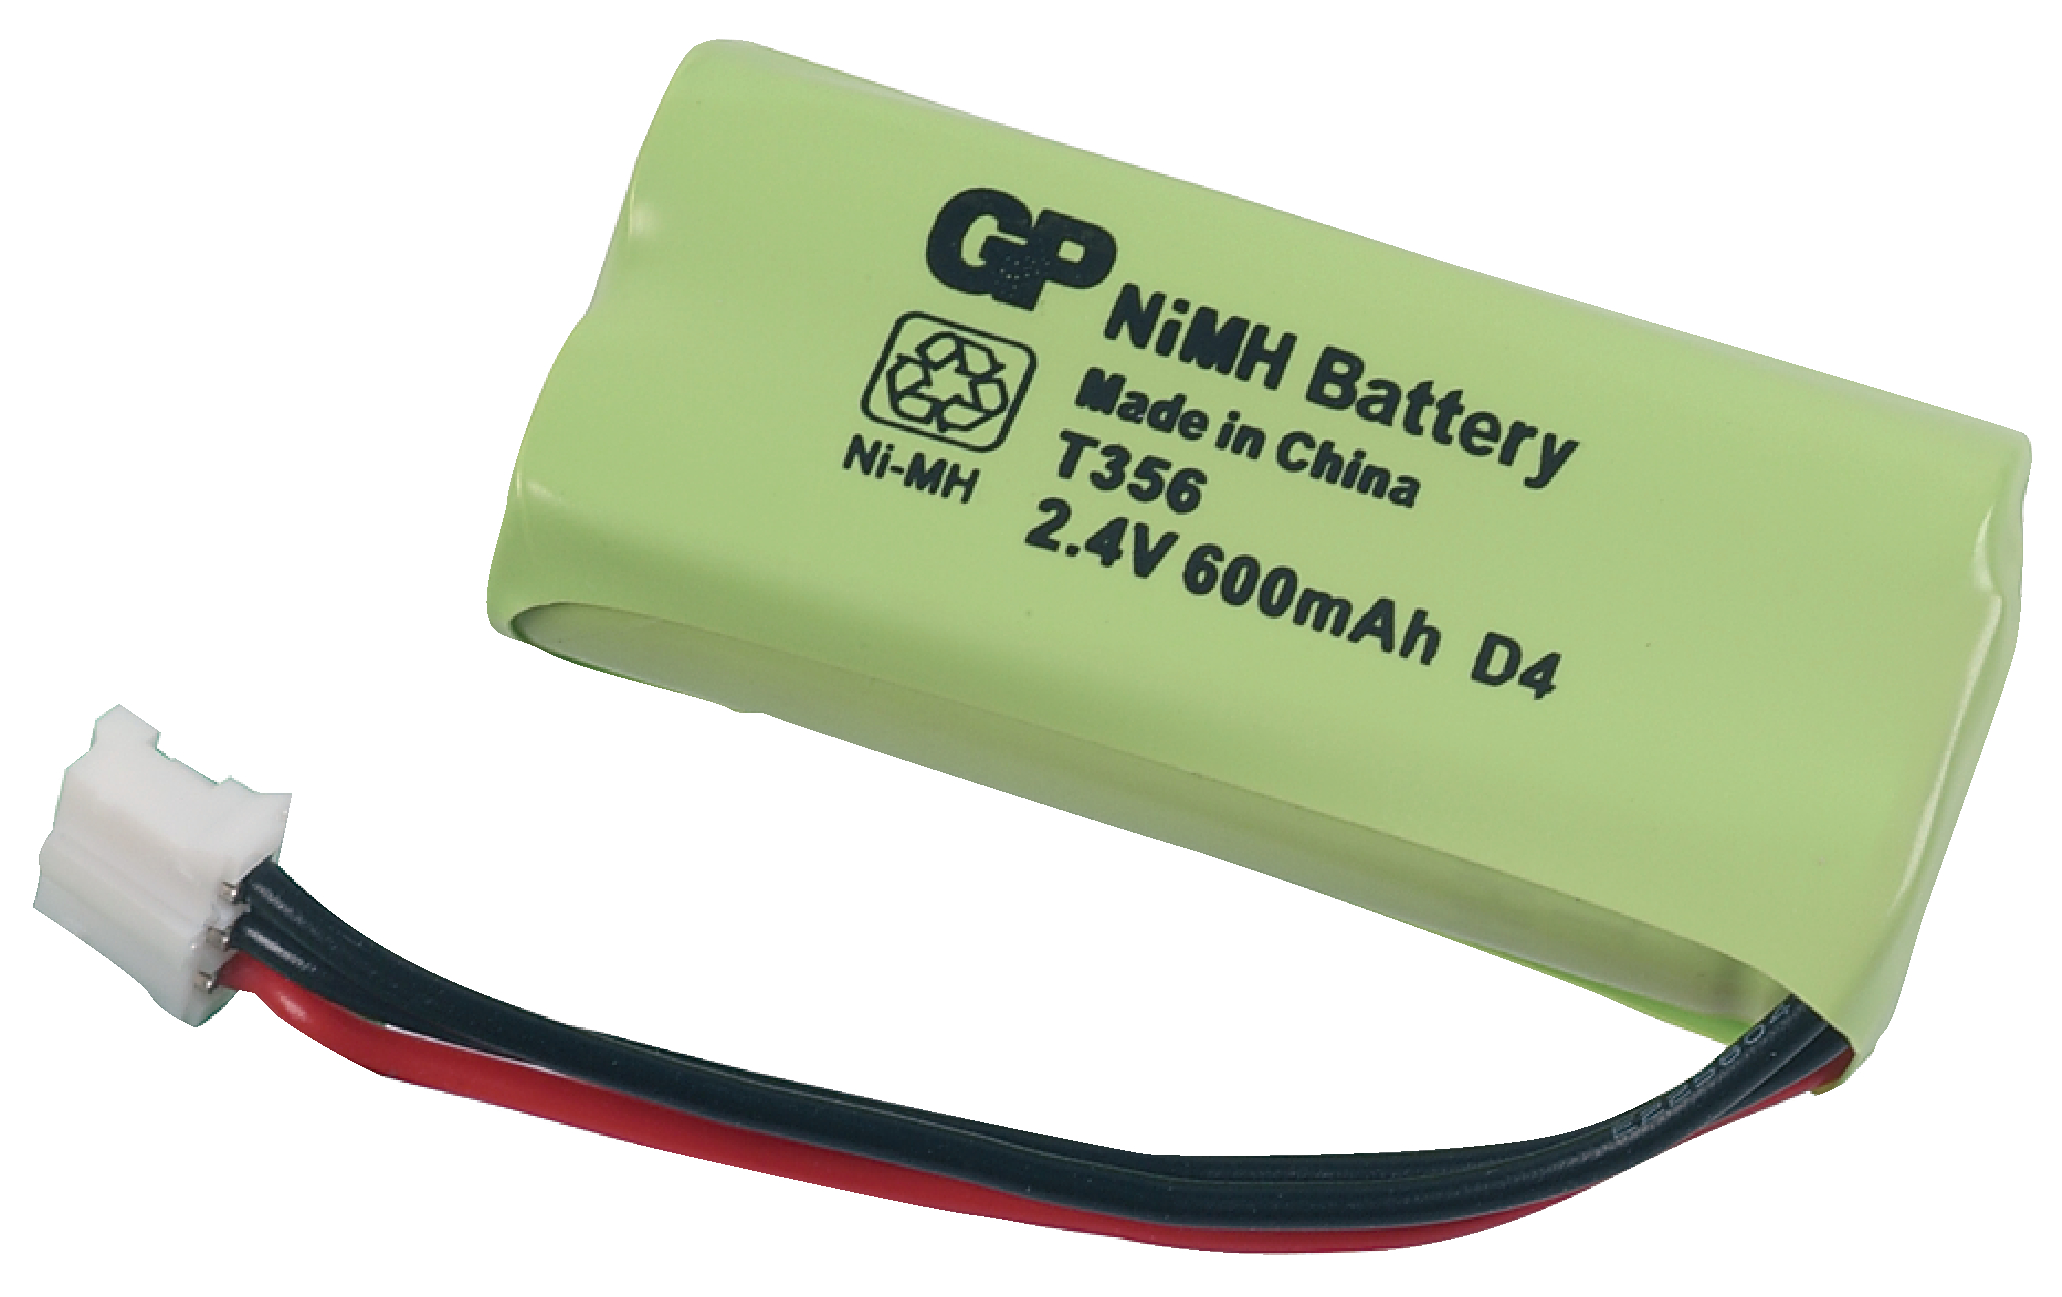 Battery 2. 2.4V 600mah аккумулятор. Аккумулятор GP NIMH Battery для радиотелефона. Аккумулятор для радиотелефона 2.4 v. Аккумулятор t-356 2.4v 800mah Robiton.